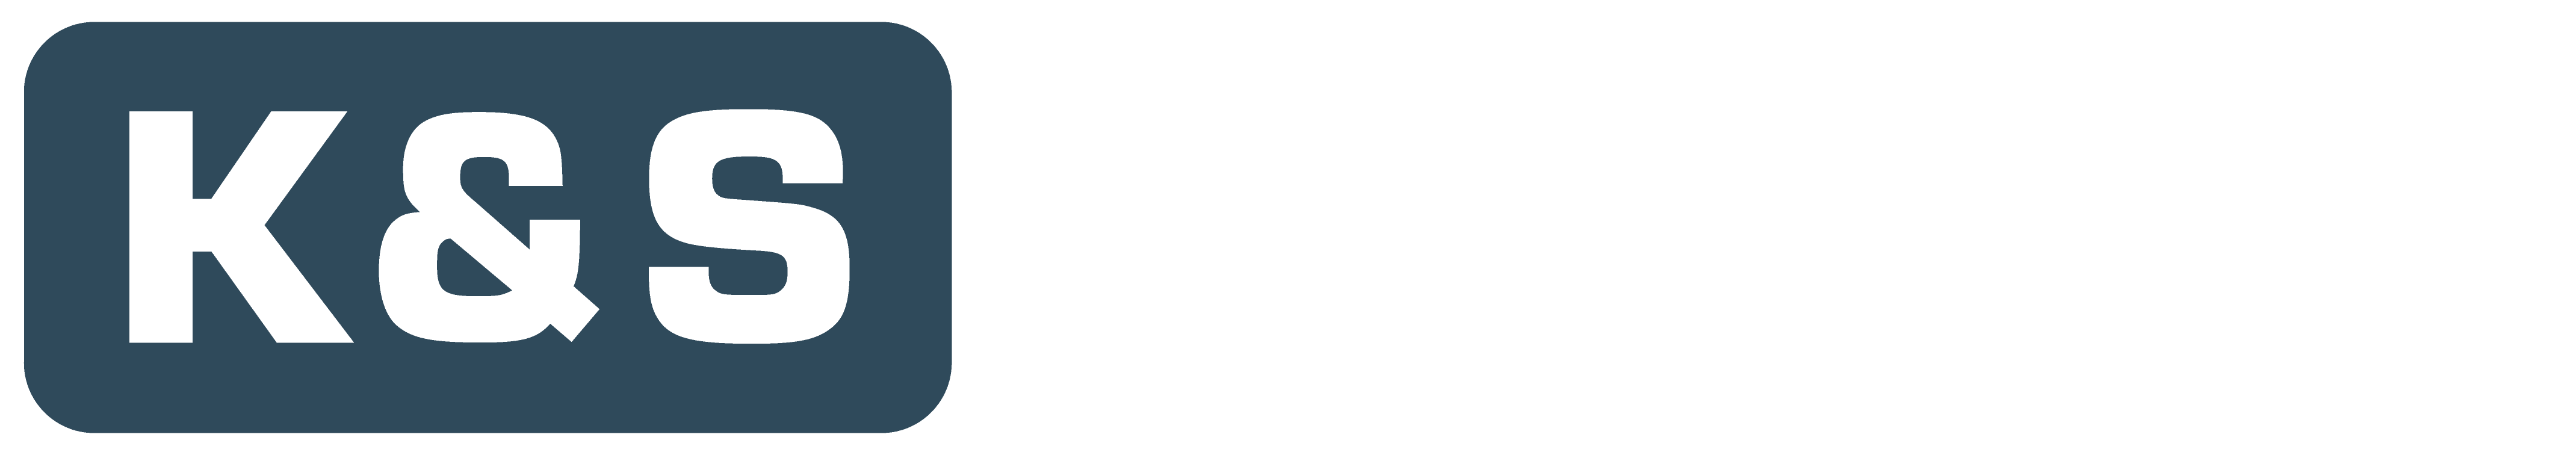 K&S Rohrreinigung Logo